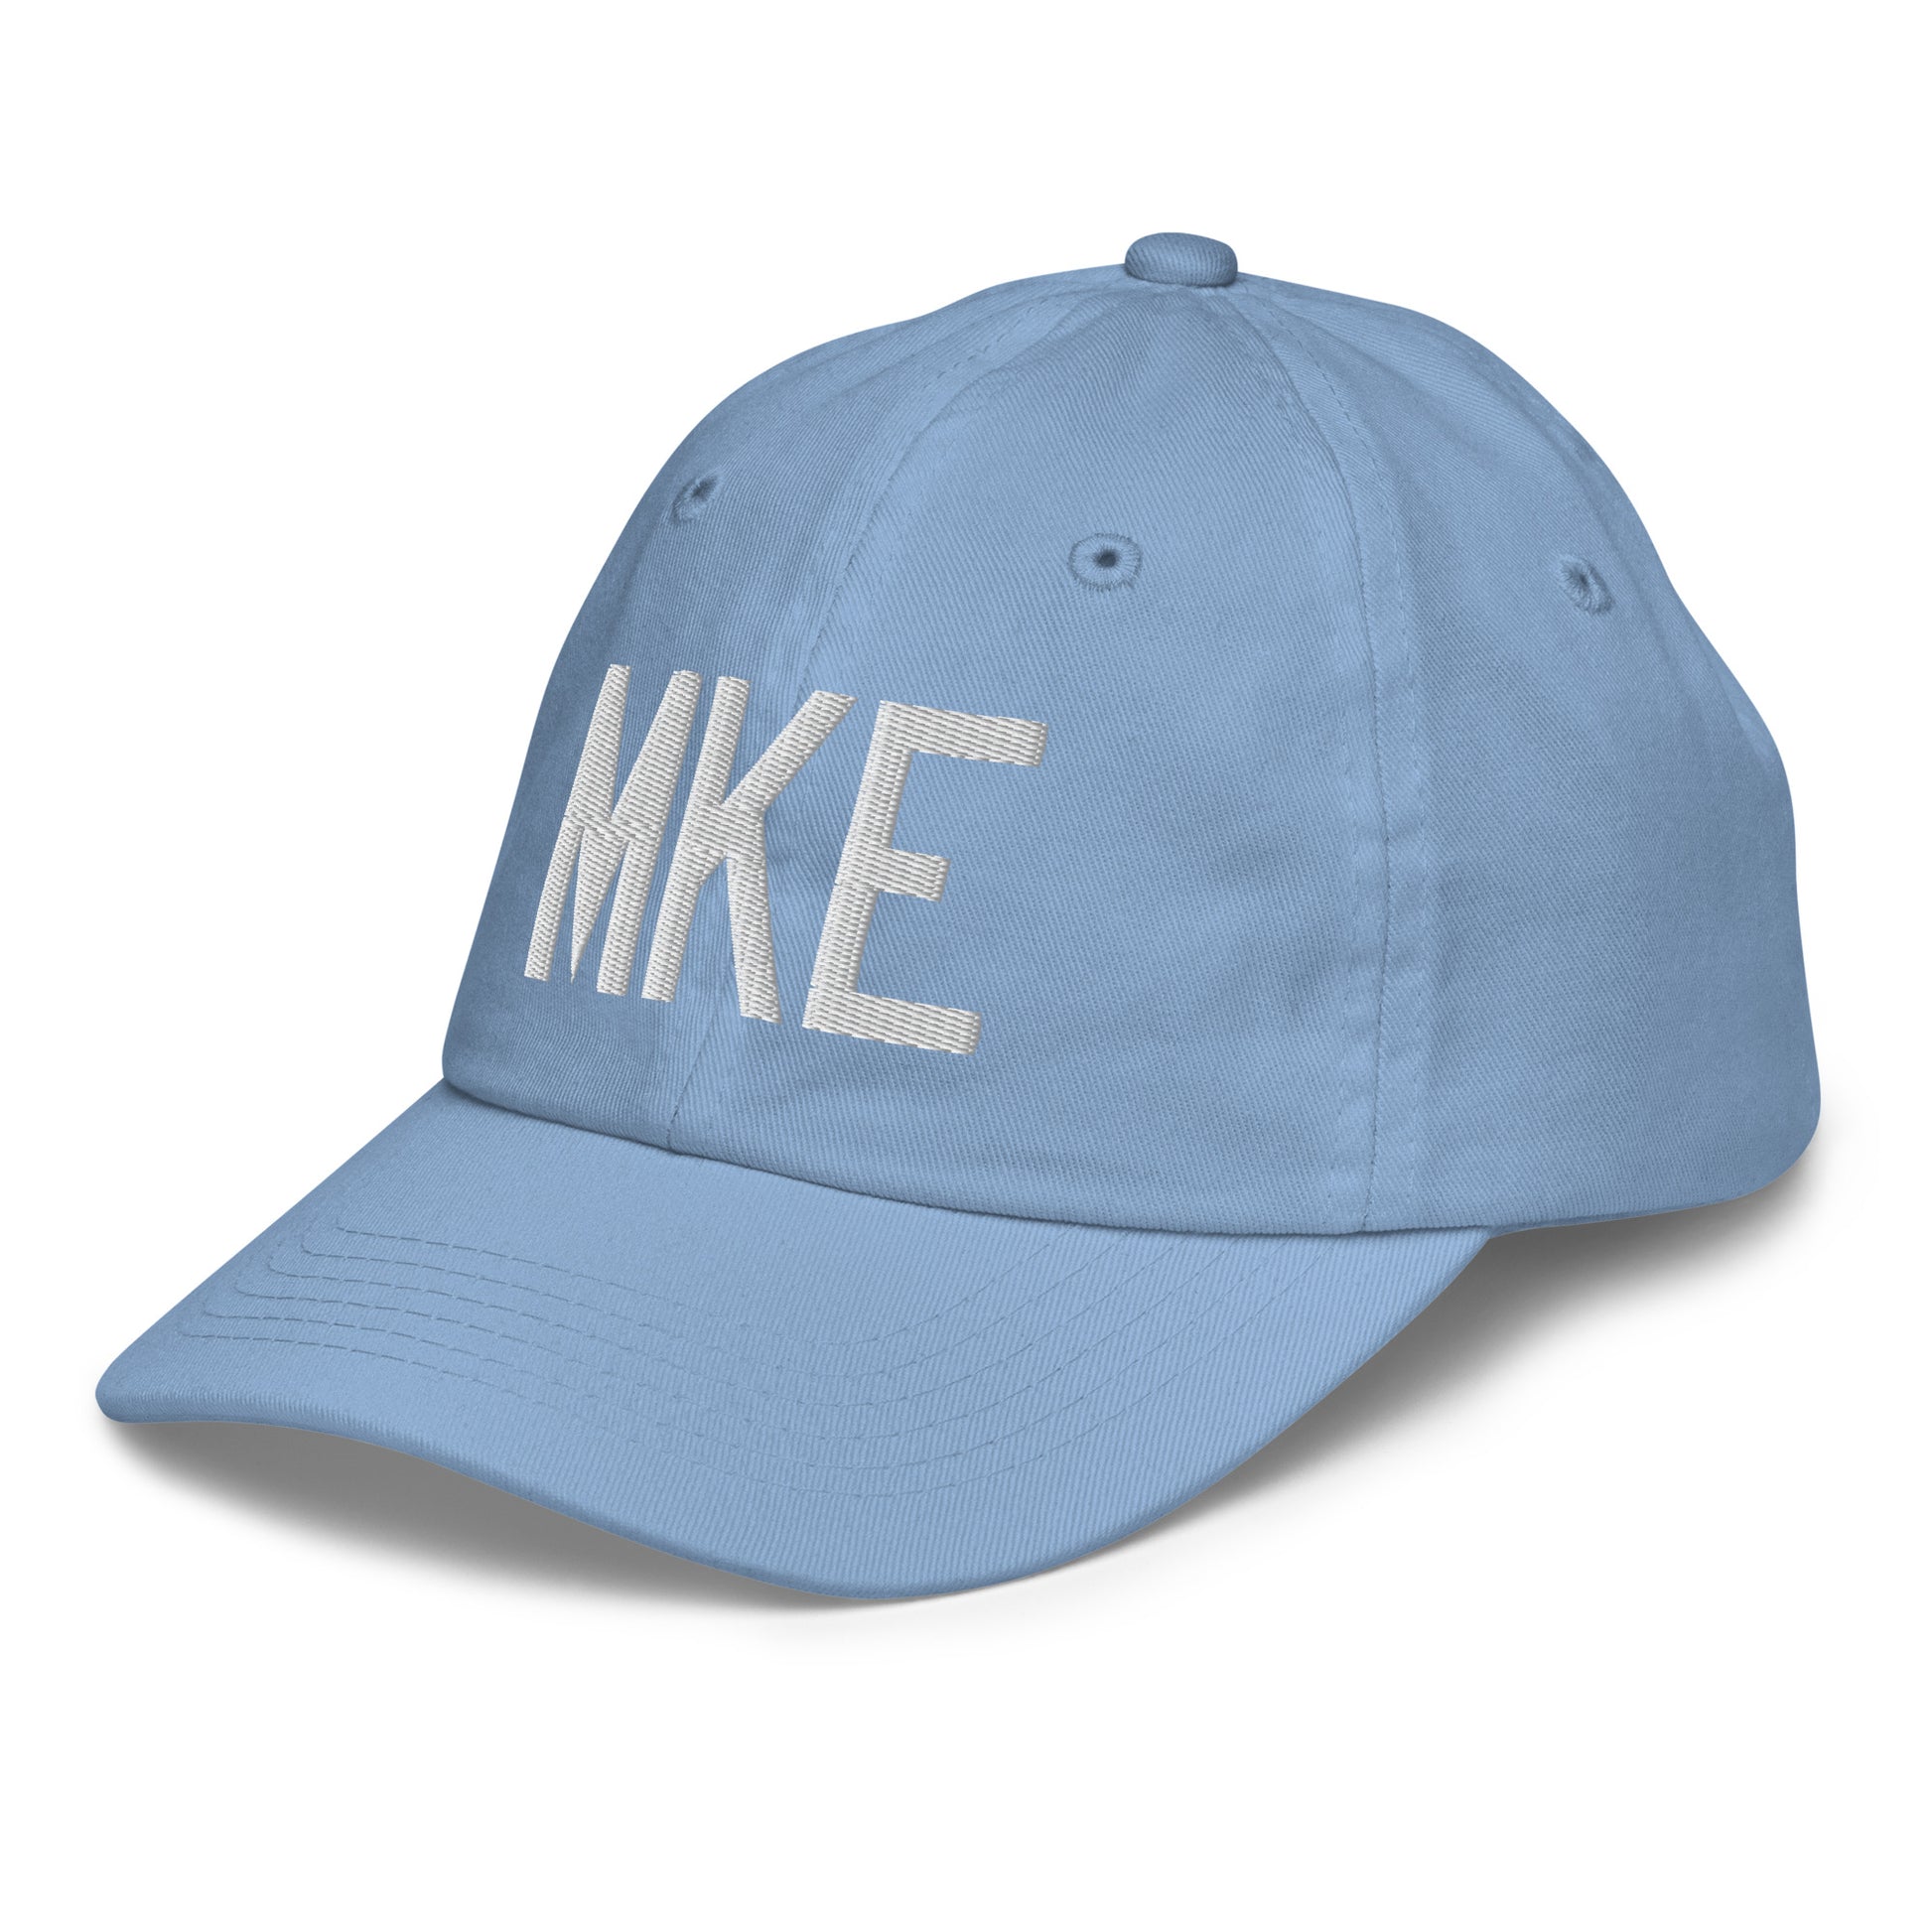 Airport Code Kid's Baseball Cap - White • MKE Milwaukee • YHM Designs - Image 24